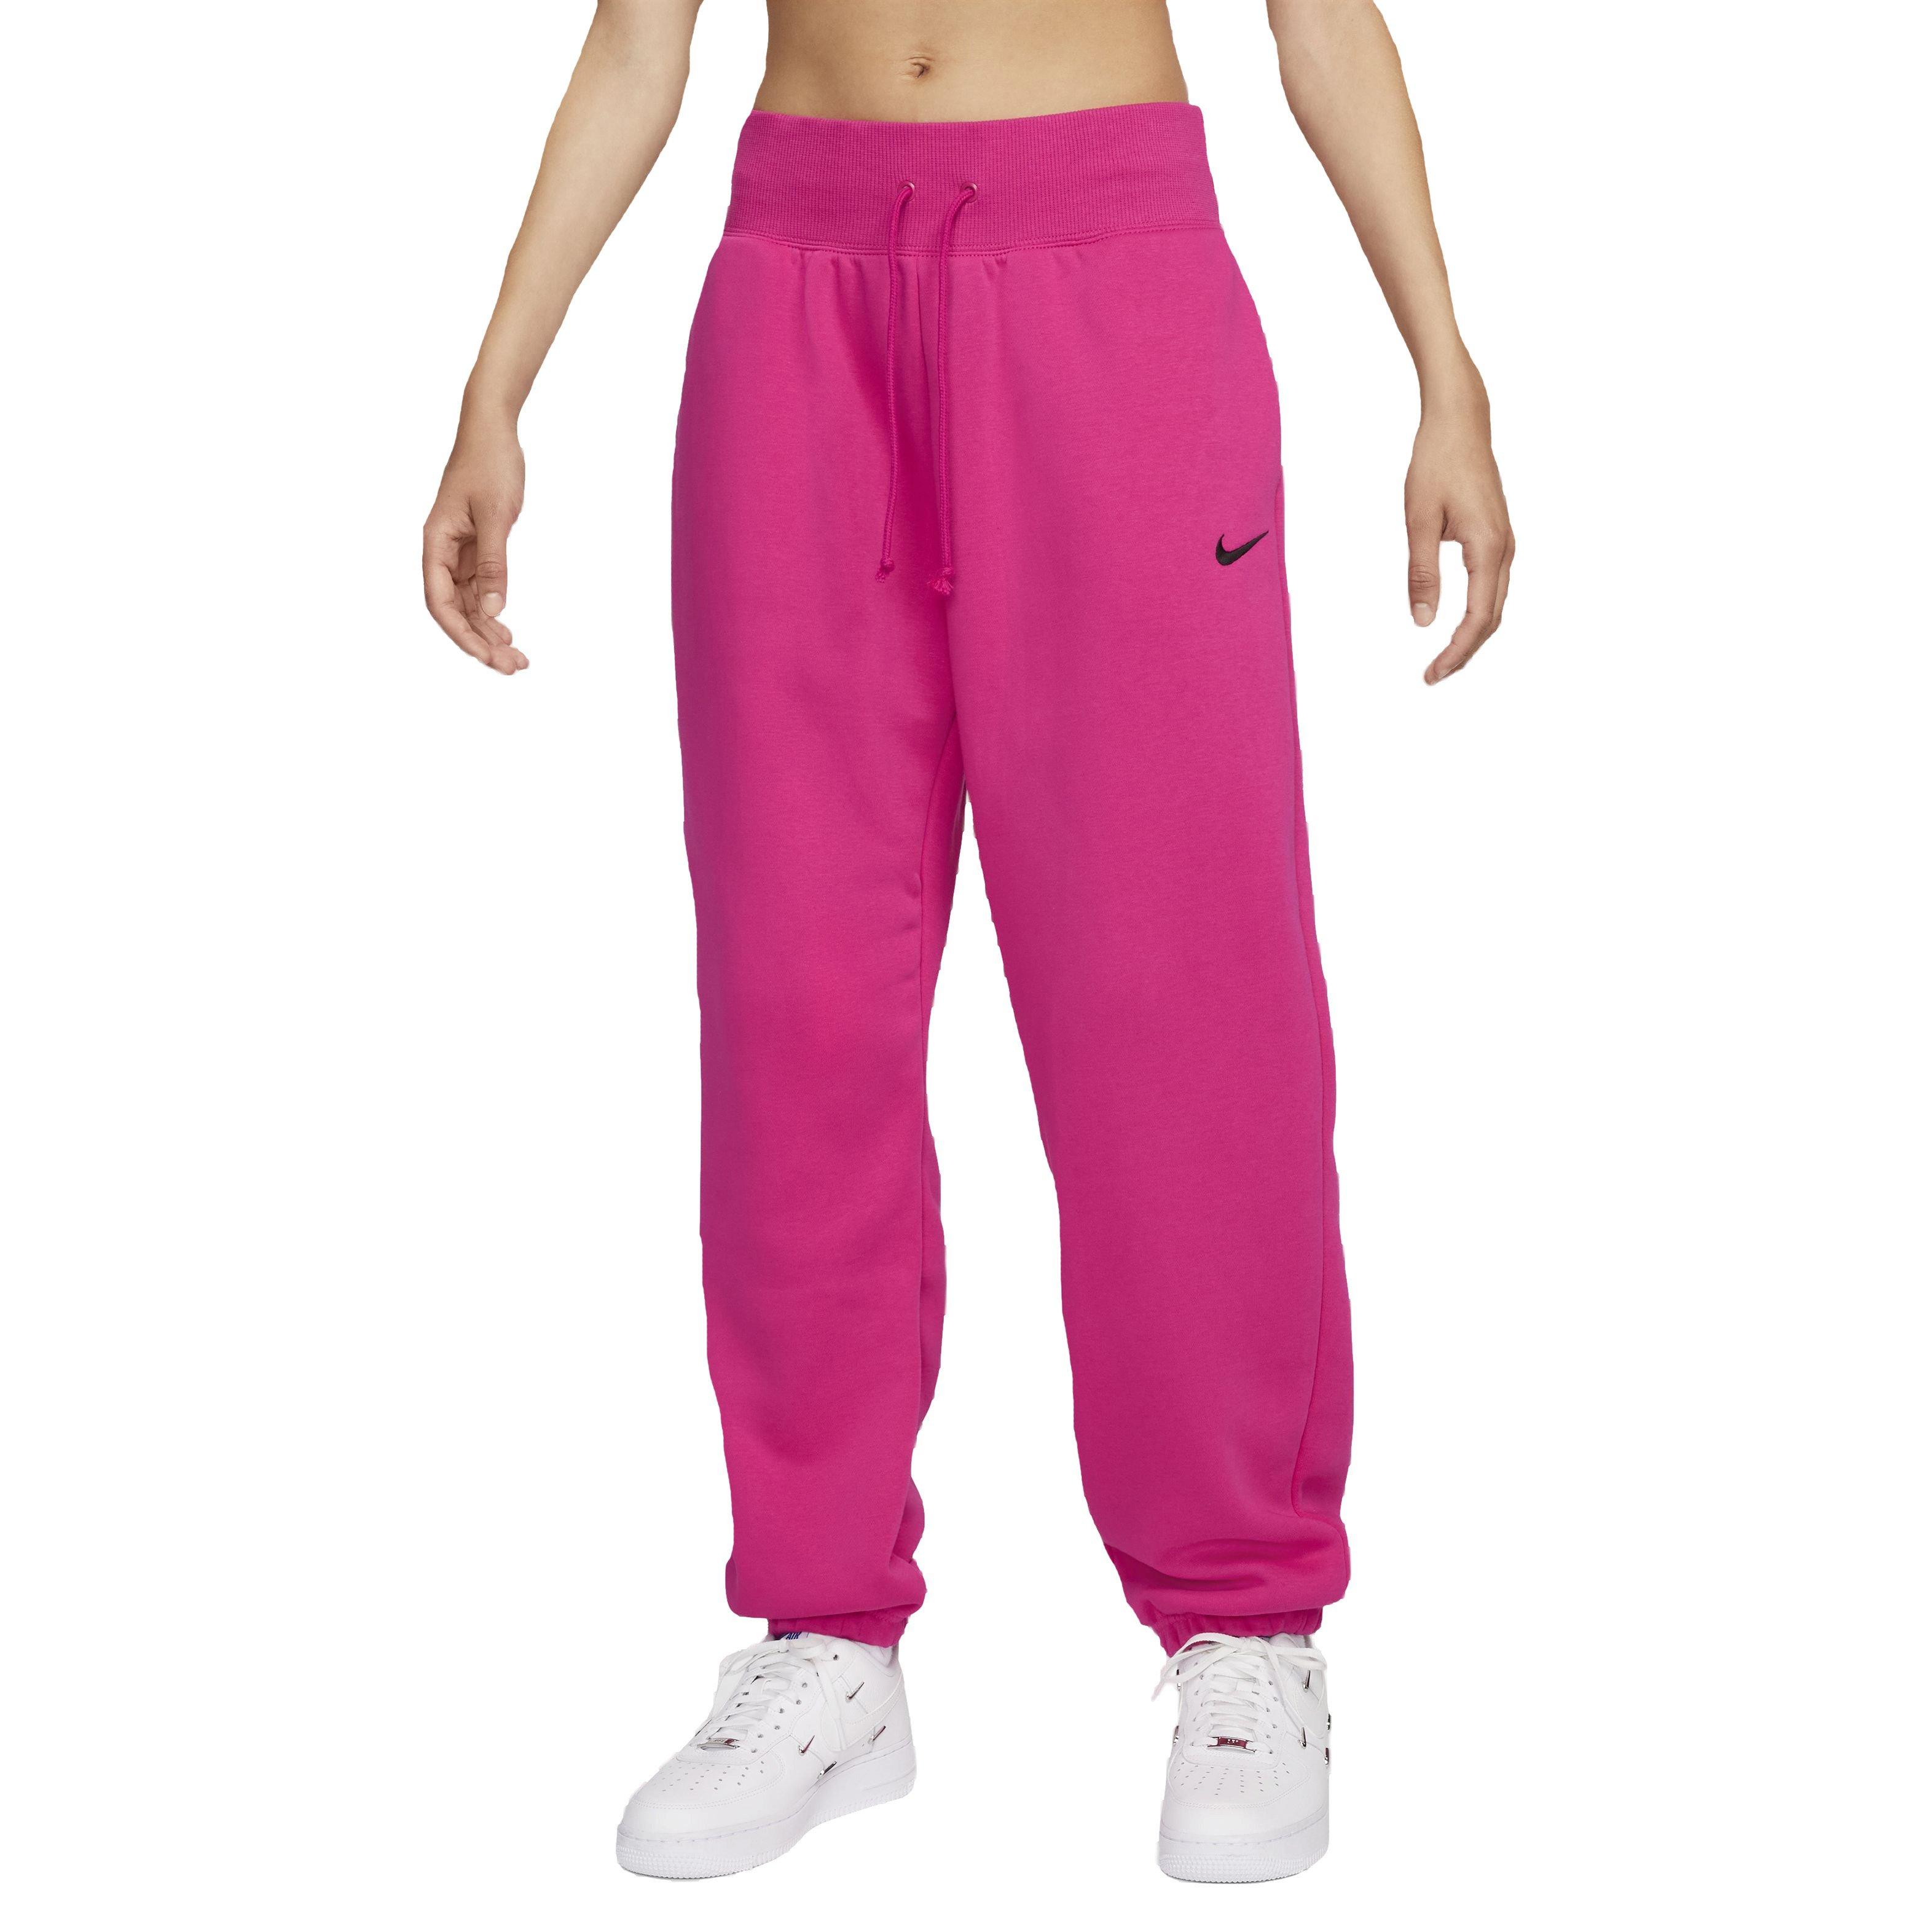 Nike Women's Sportswear Joggers - Hibbett